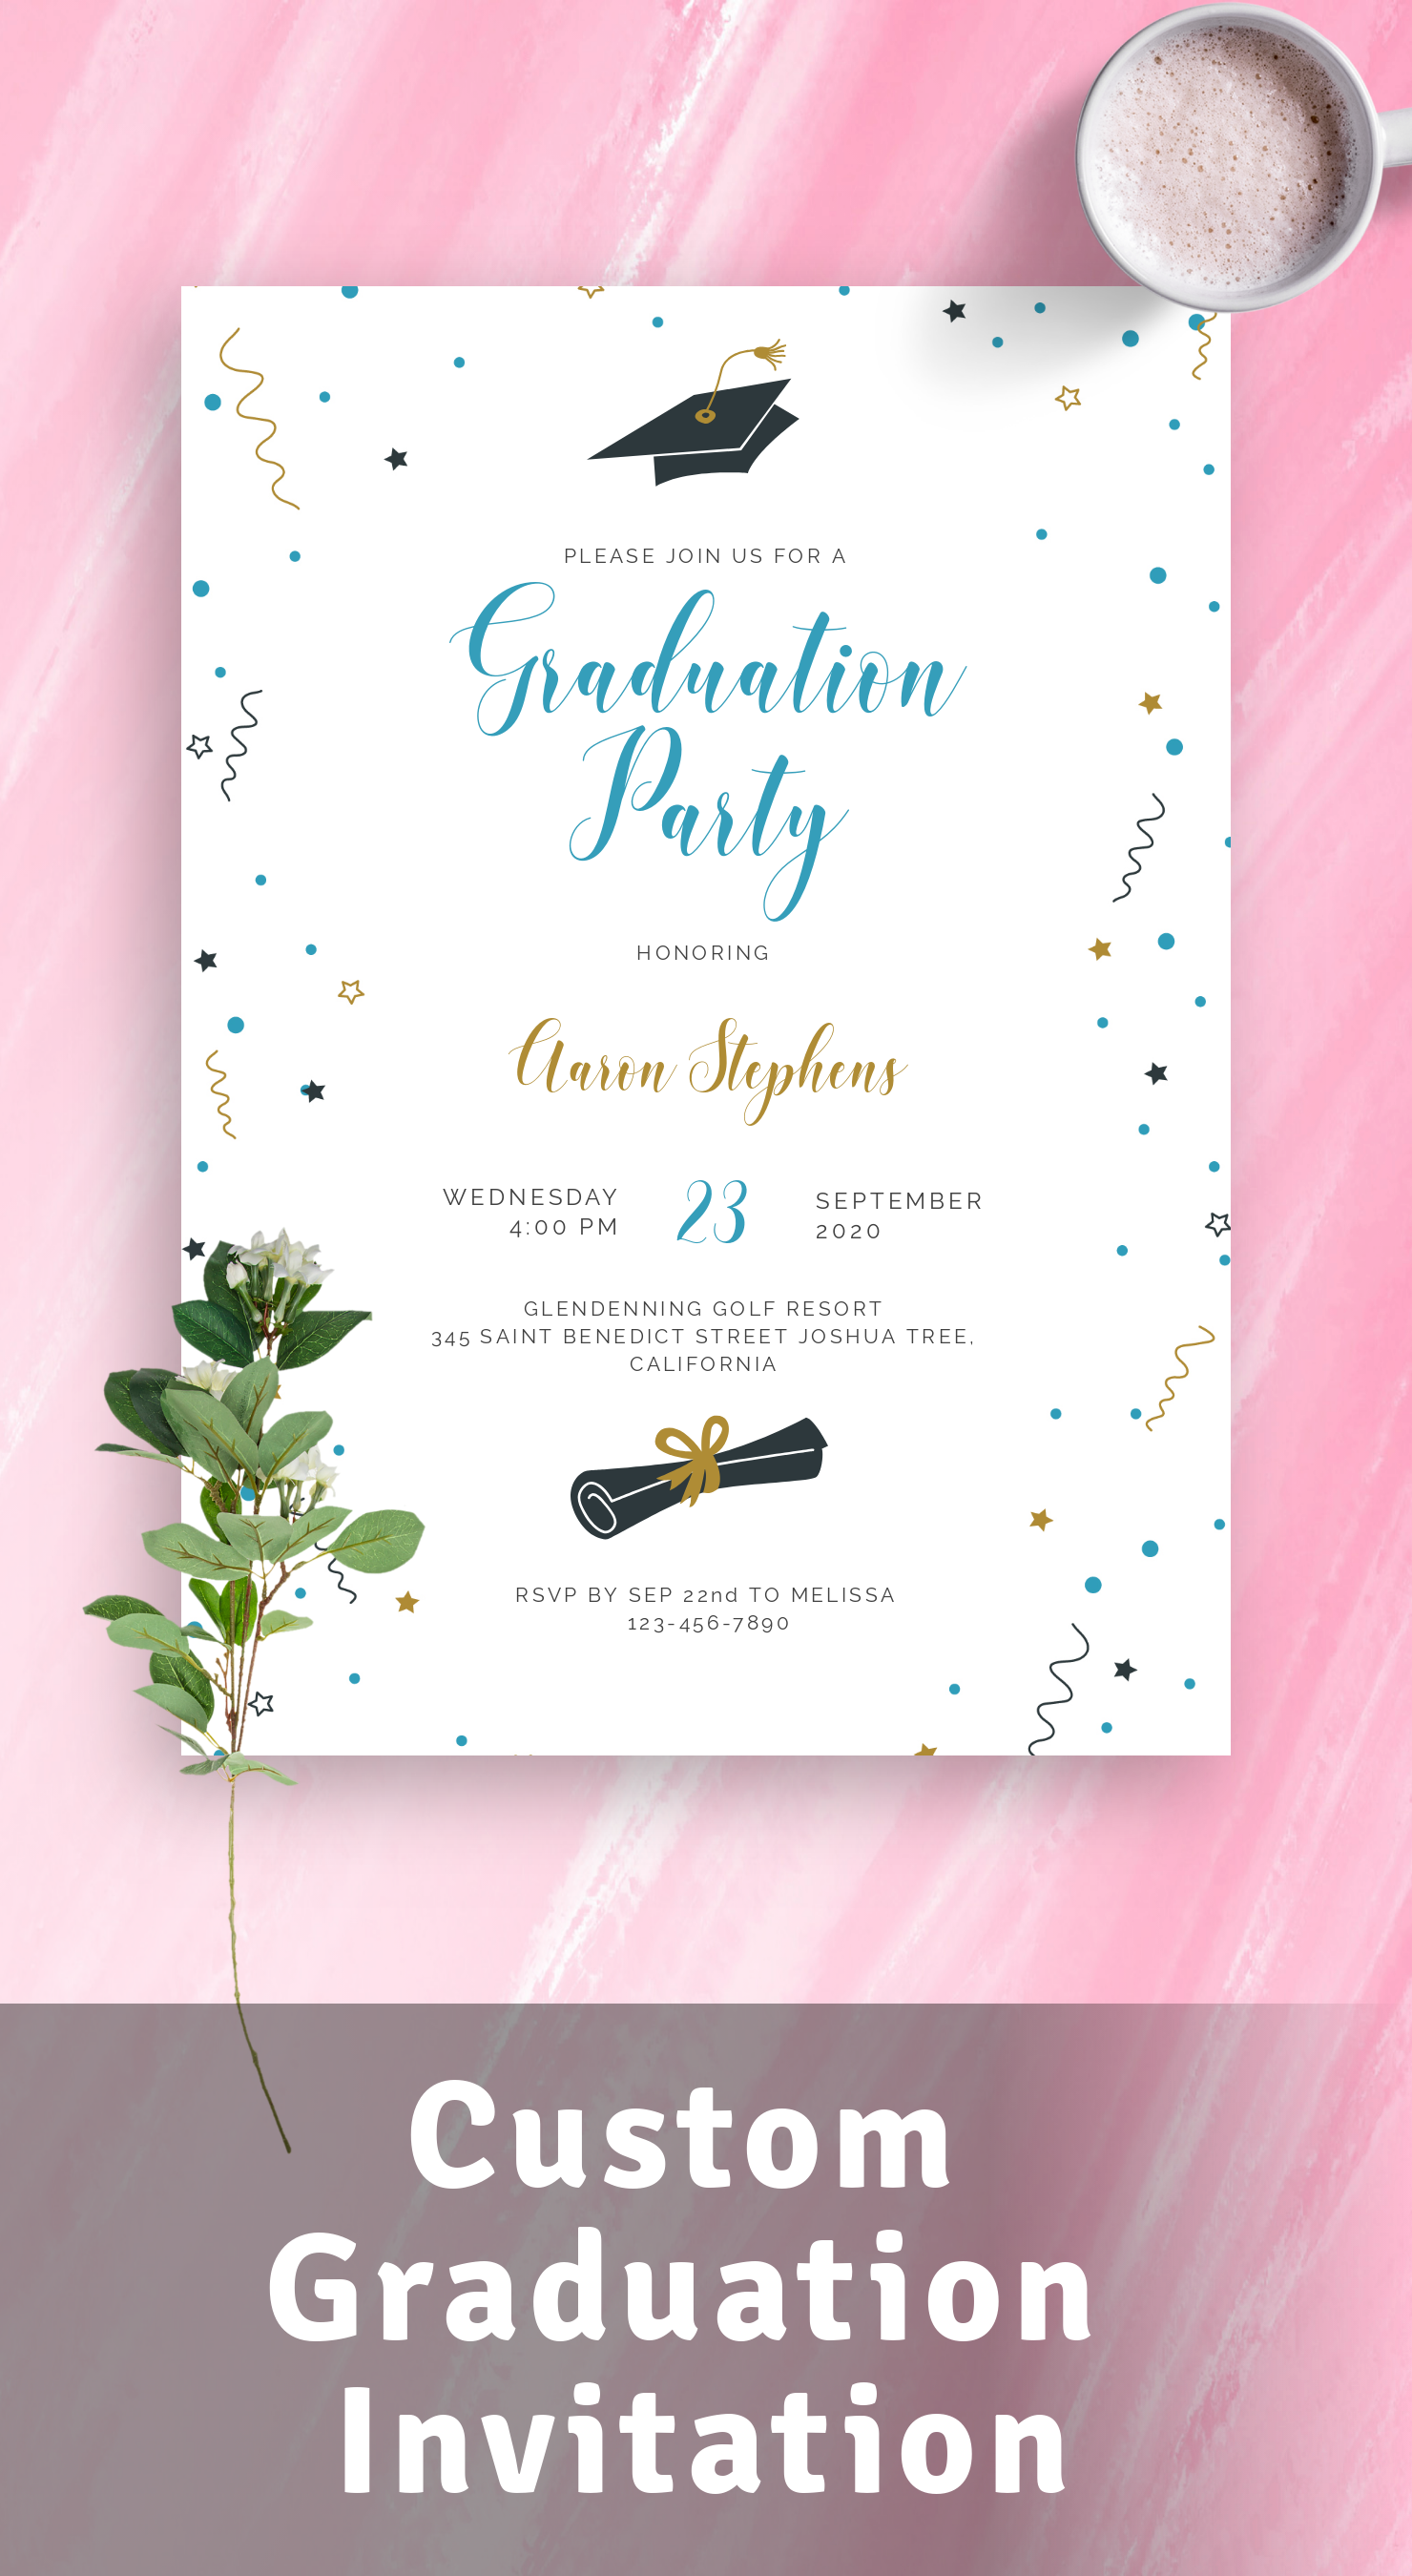 Download or Print Graduation Invitations Templates